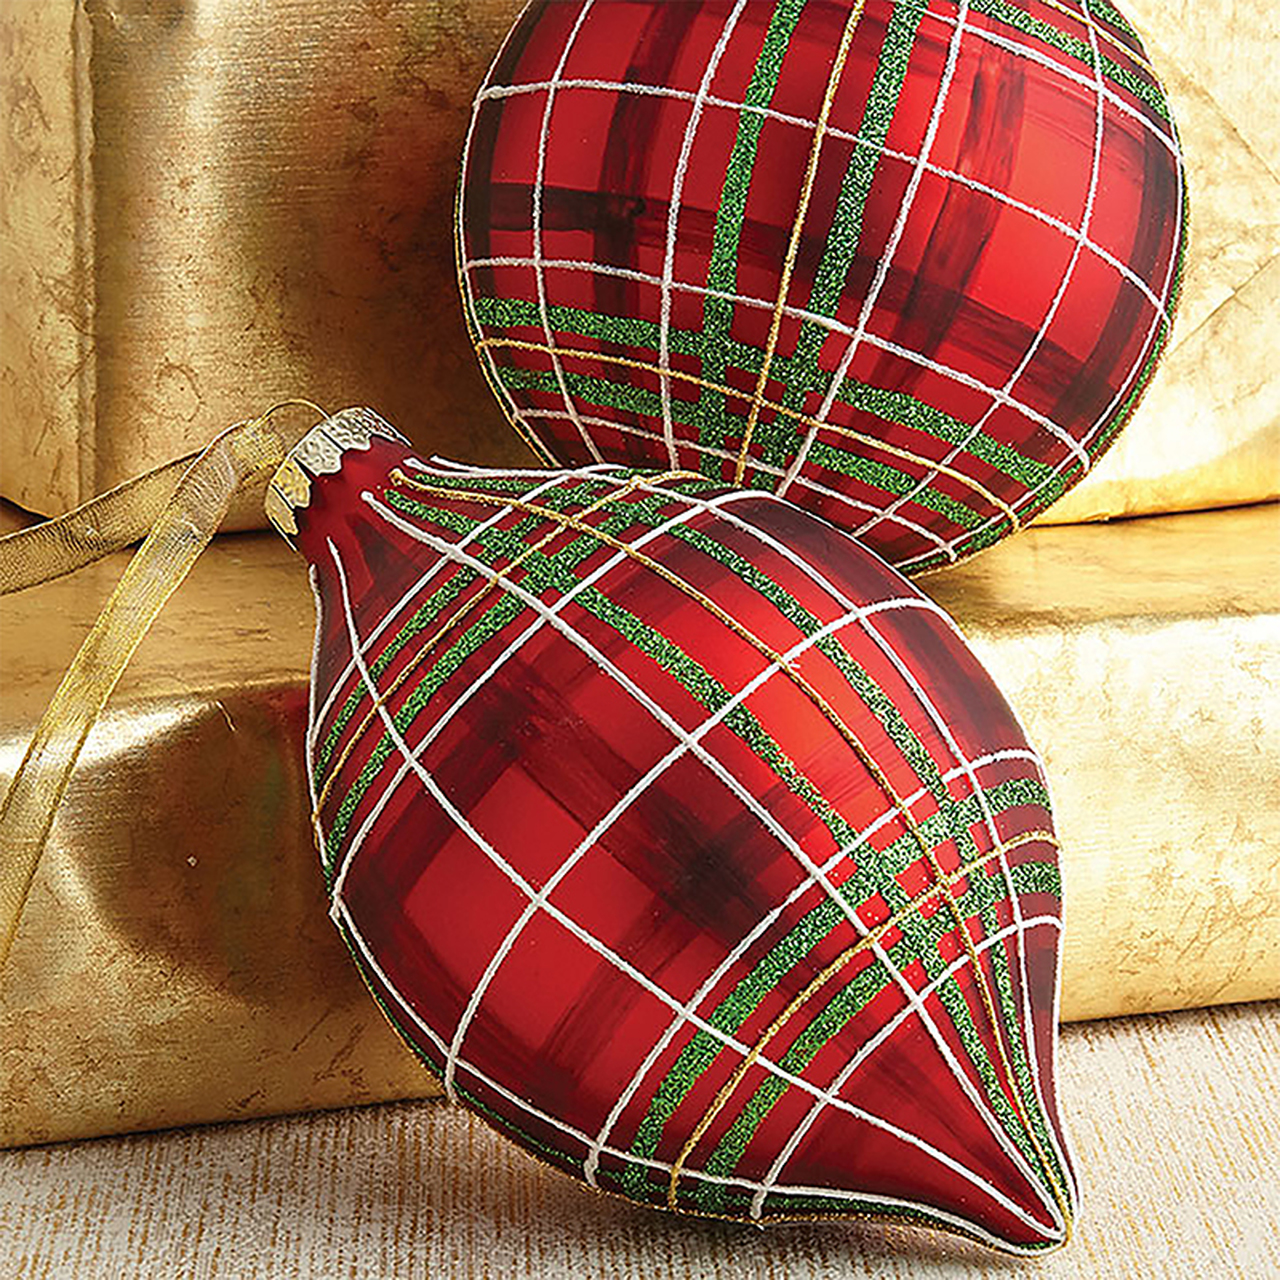 Plaid Christmas Ornaments